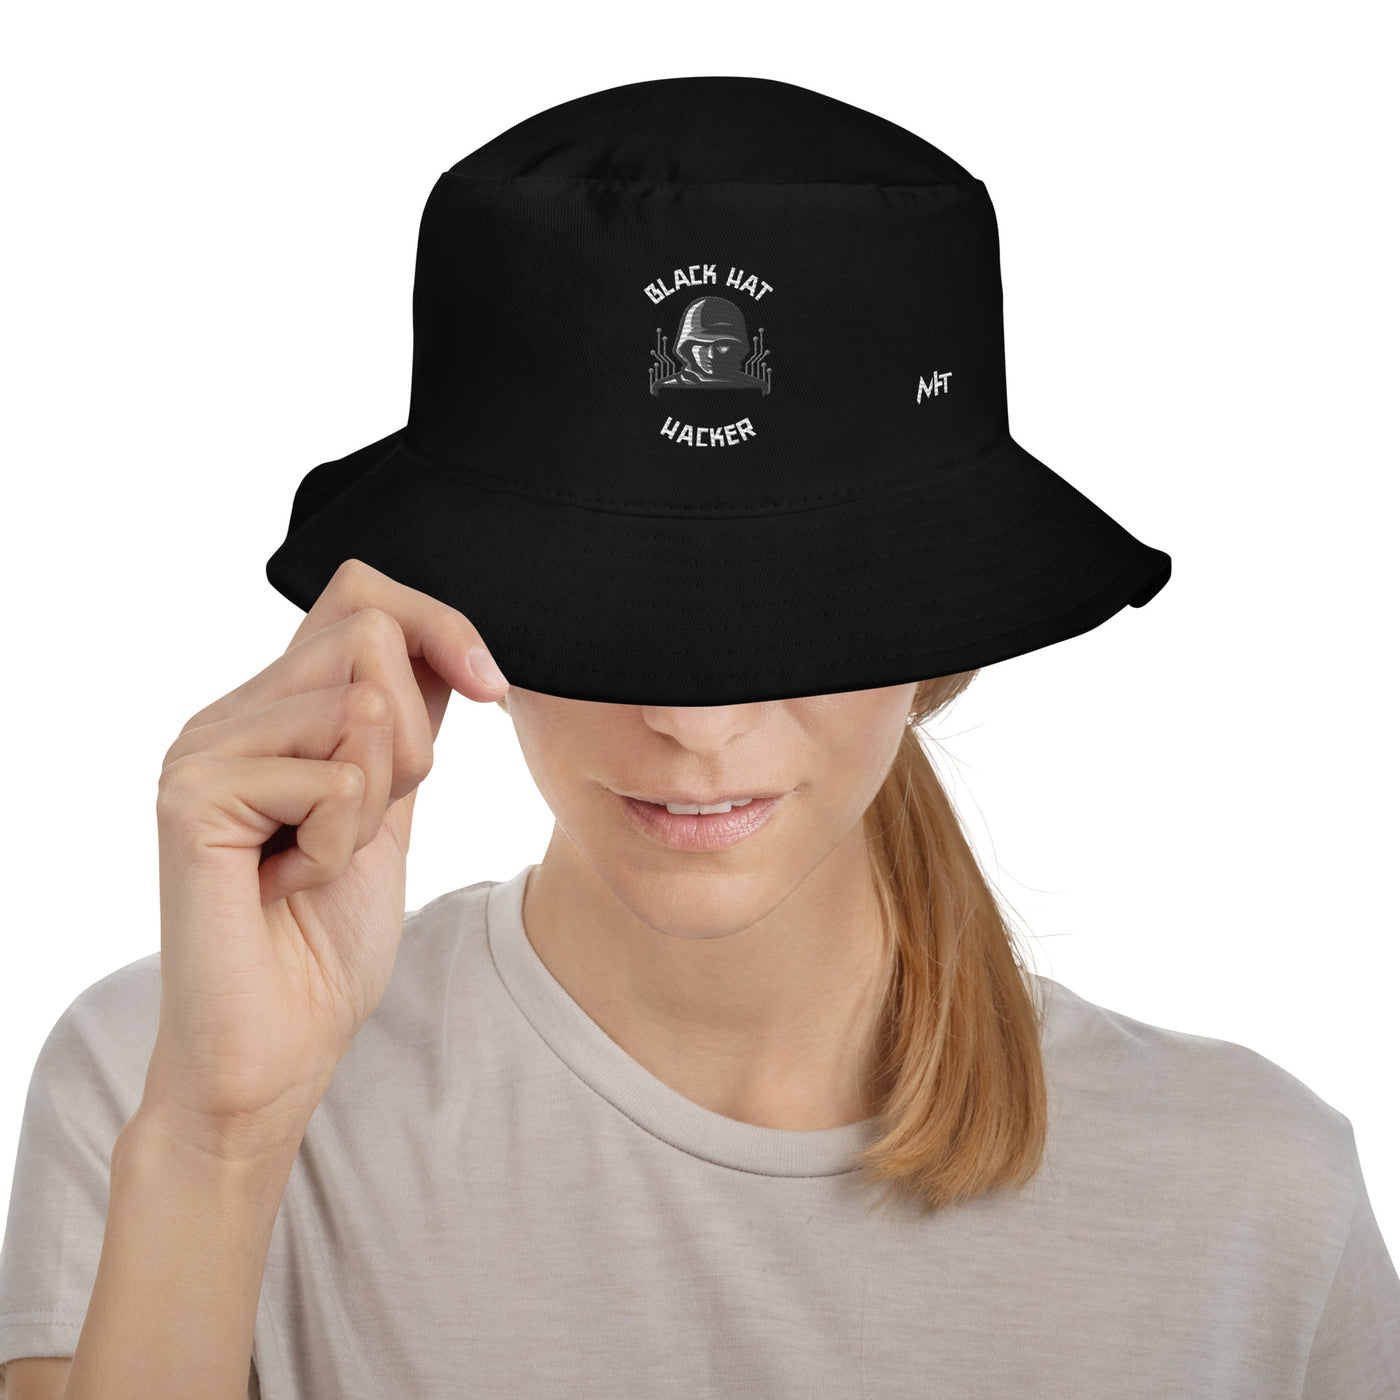 Black Hat Hacker - Bucket Hat